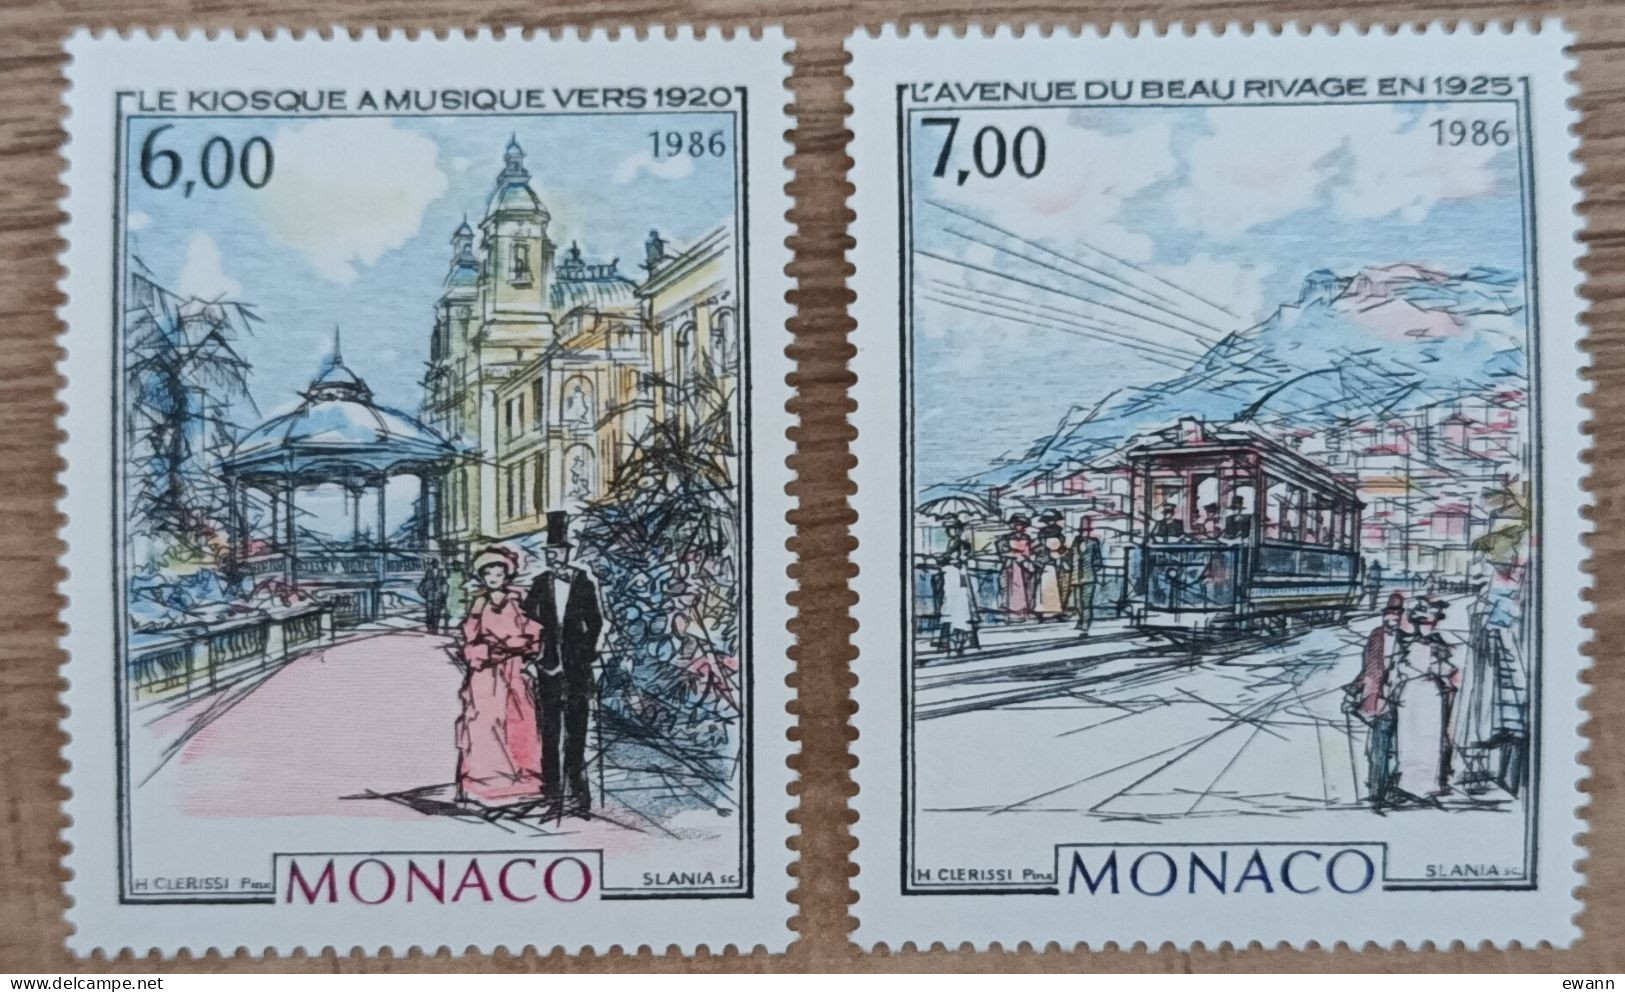 Monaco - YT N°1543, 1544 - Monaco à La Belle Epoque / Kiosque à Musique / Avenue Du Beau Rivage - 1986 - Neuf - Ungebraucht